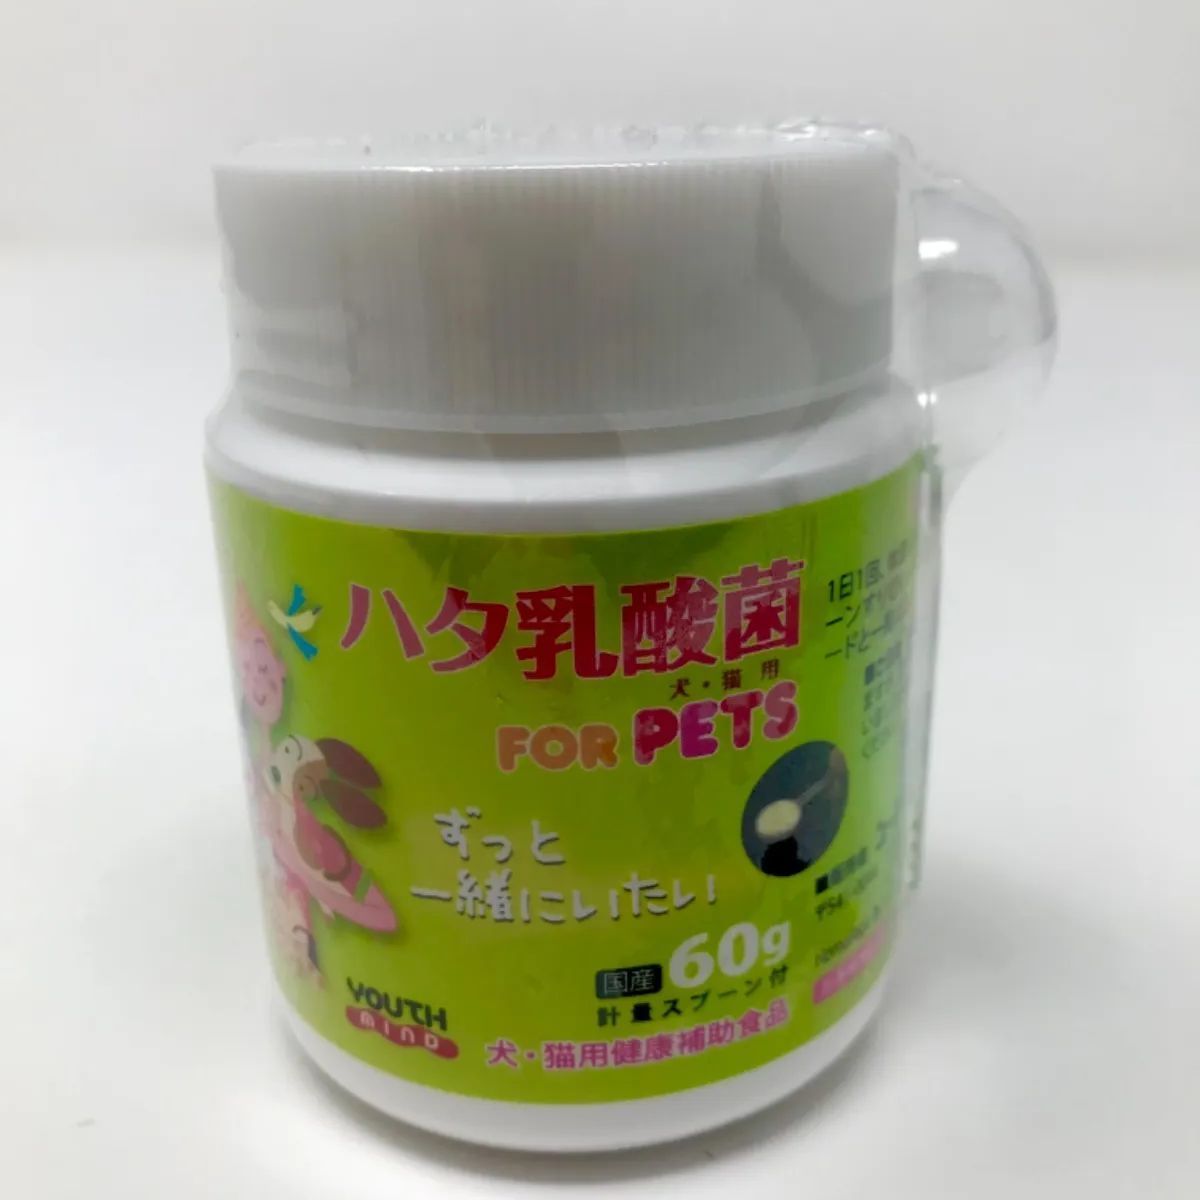 ハタ乳酸菌 FOR PETS 60g 軽量スプーン付 - 公式ストア - メルカリ